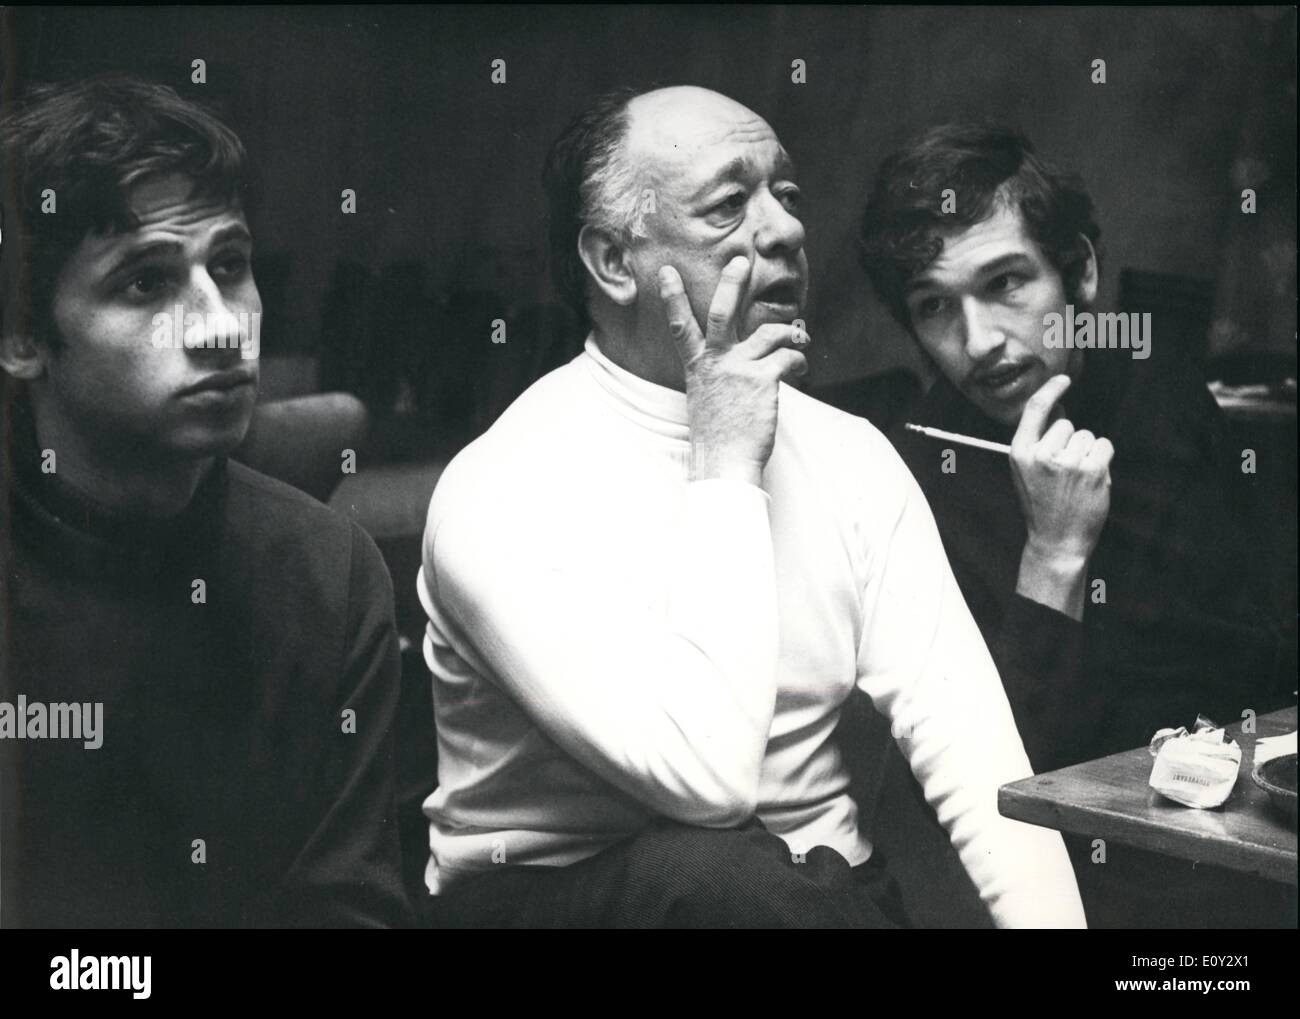 Septembre 09, 1968 - Ionesco met en scène une pièce de théâtre de Ionesco à Zurich : auteur né roumain Ionesco est en fait à Zurich, où il met en scène son jeu absurde de devoir ''victime'' pour ouvrir cette saison ans thetre Banque D'Images